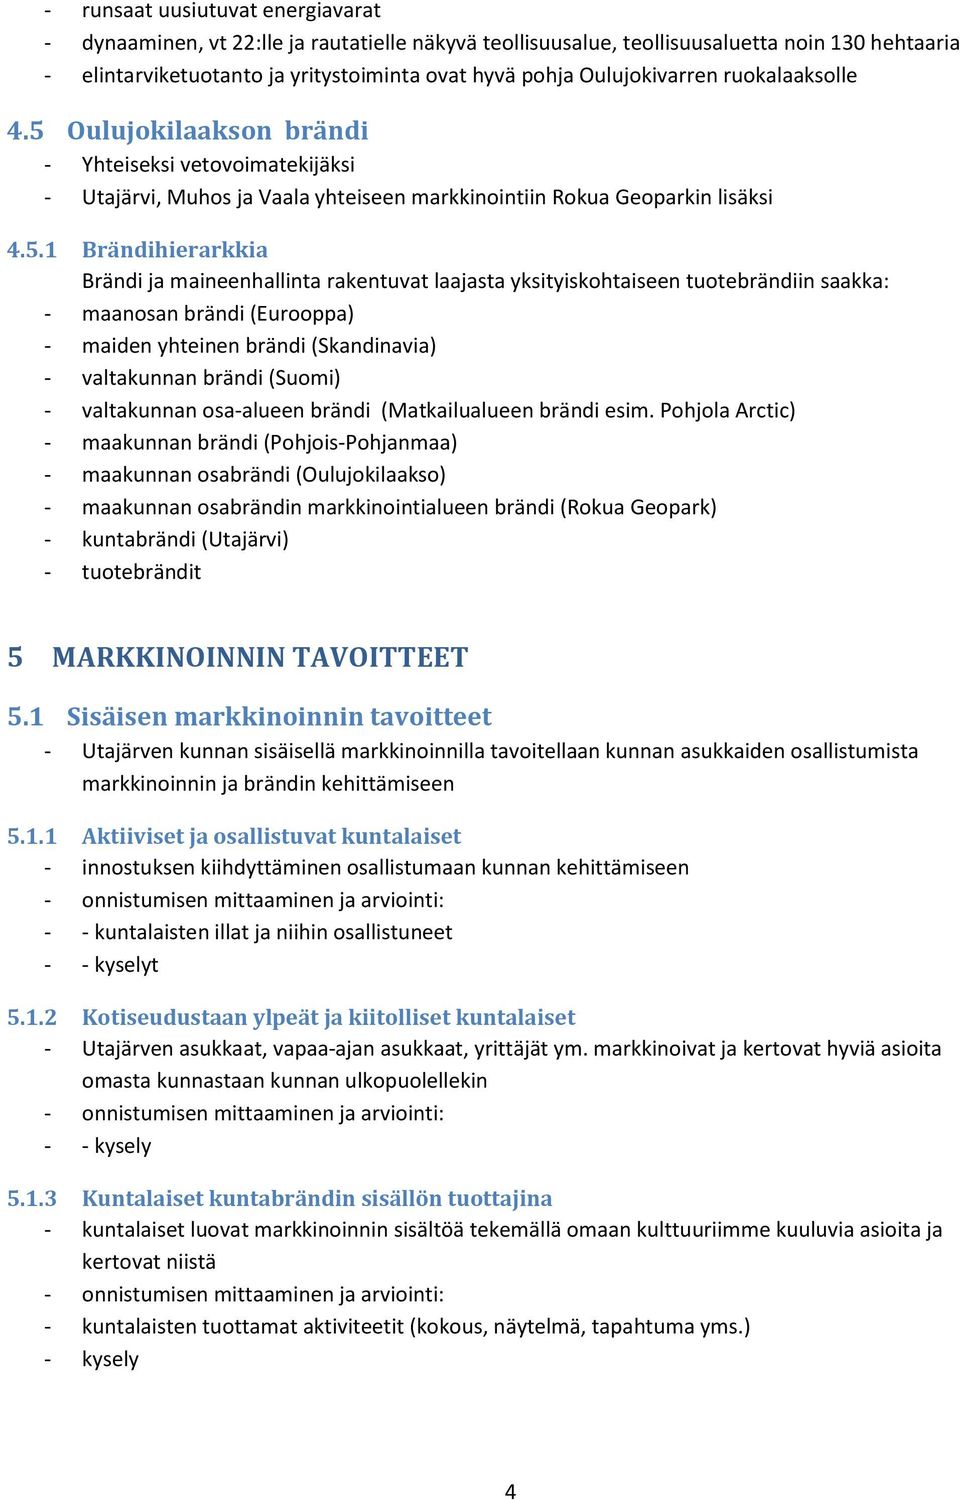 Oulujokilaakson brändi - Yhteiseksi vetovoimatekijäksi - Utajärvi, Muhos ja Vaala yhteiseen markkinointiin Rokua Geoparkin lisäksi 4.5.